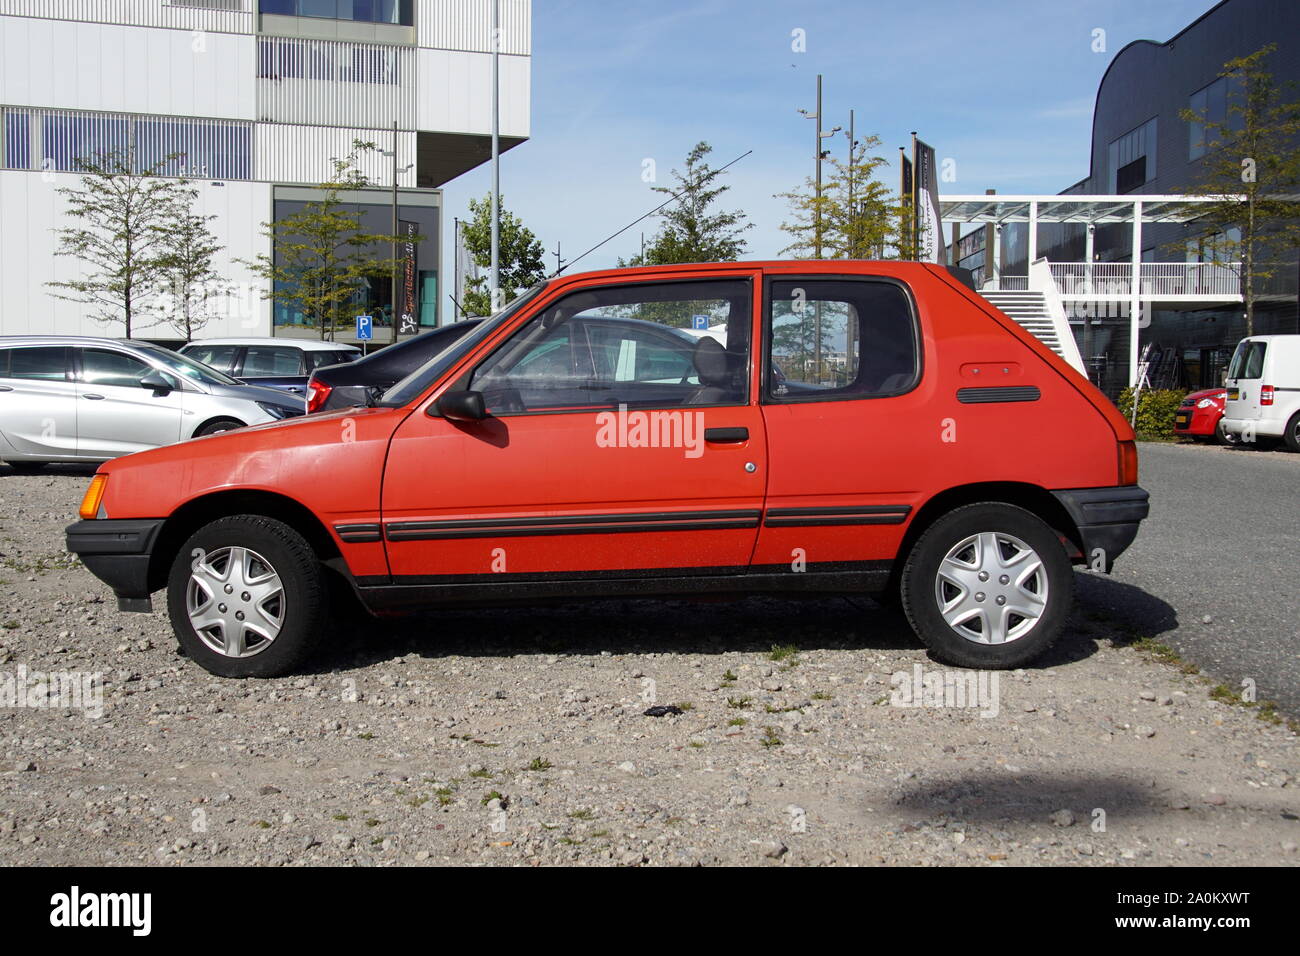 Almere, Niederlande - 20 September 2019: red Peugeot 205 auf einem öffentlichen Parkplatz geparkt. Niemand im Fahrzeug. Stockfoto